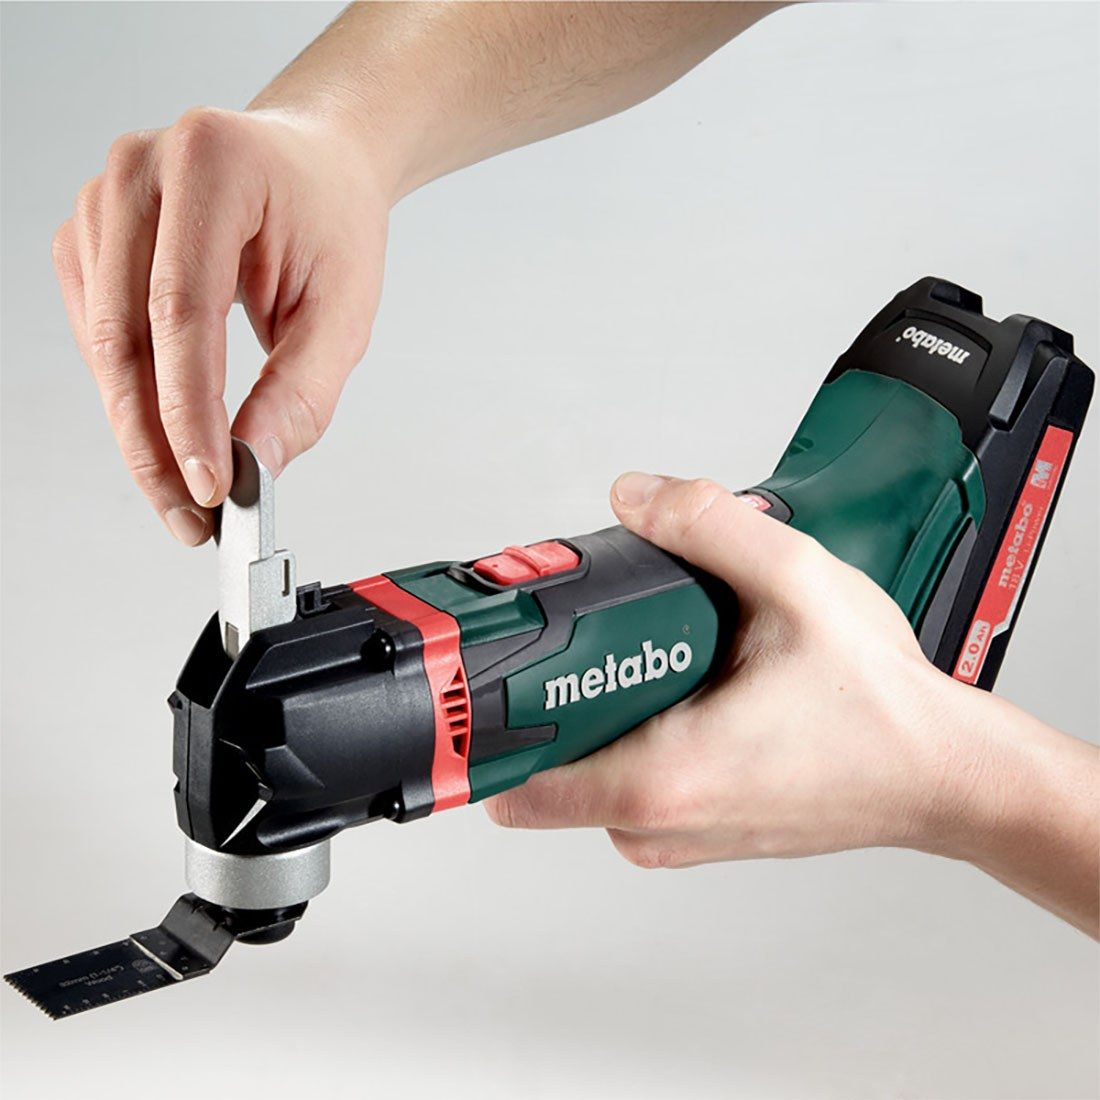 Metabo MT18LTX 18V Cordless Multi Tool with Meta-Box 613021840